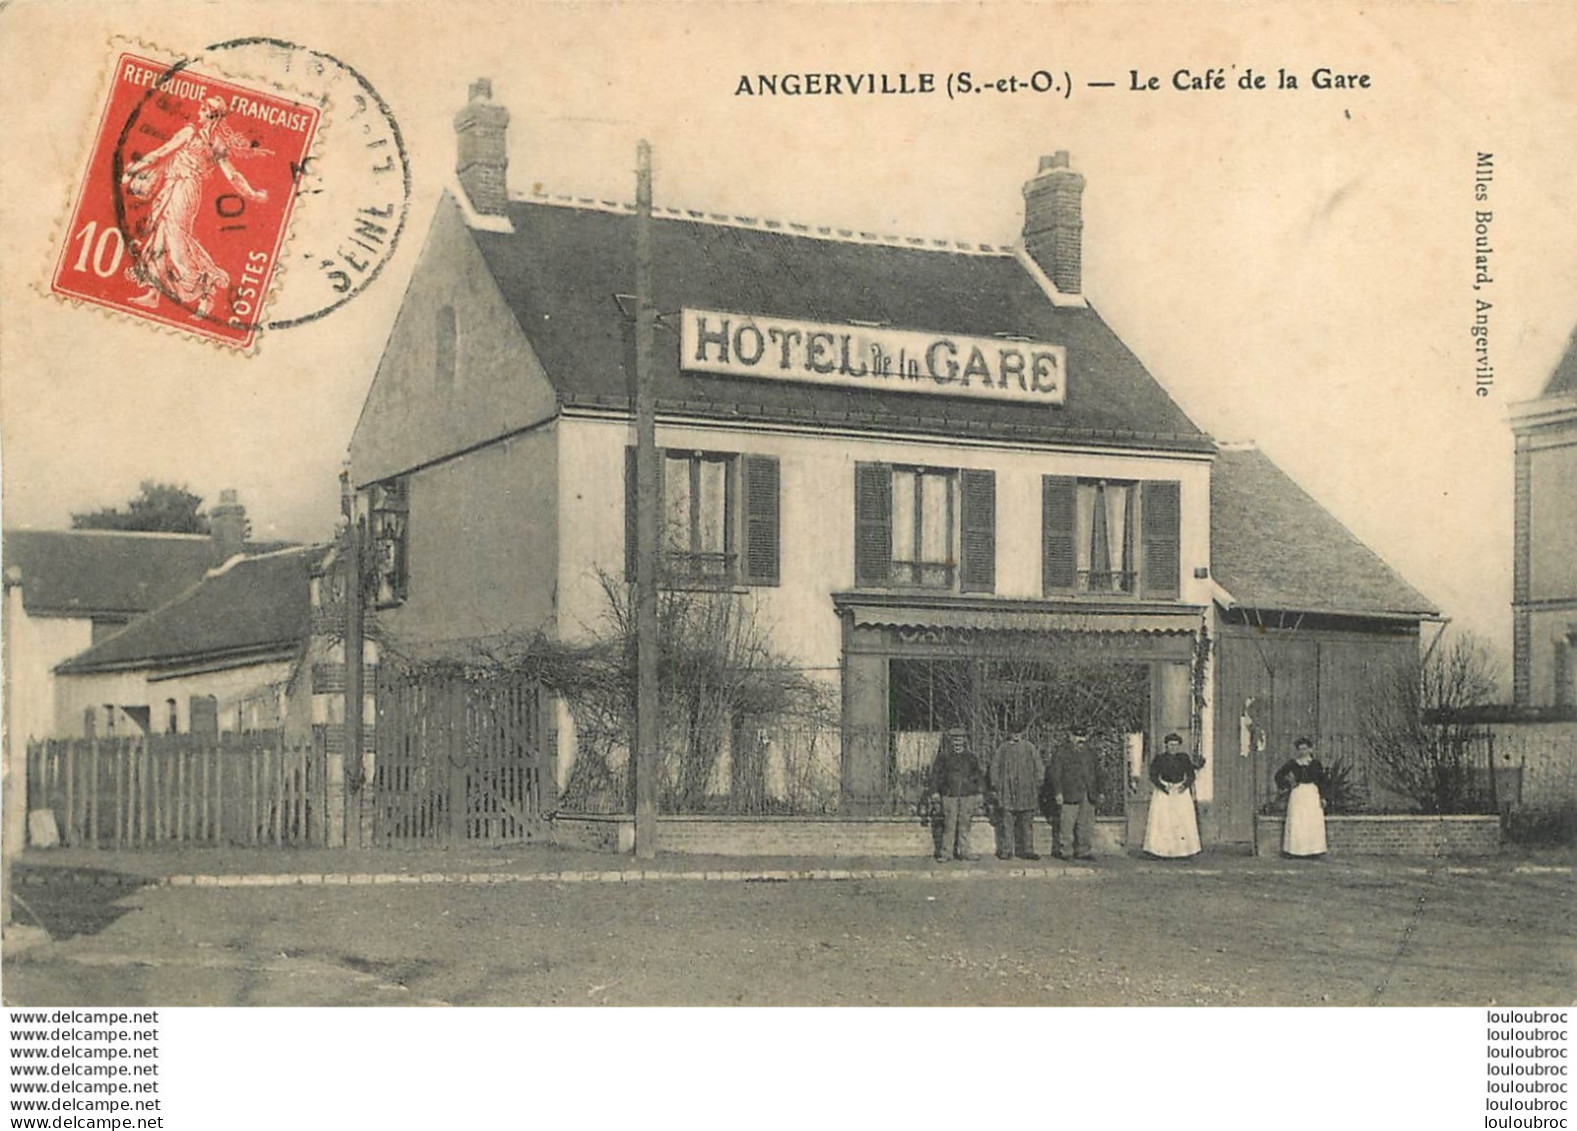 RARE ANGERVILLE LE CAFE DE LA GARE HOTEL DE LA GARE - Angerville